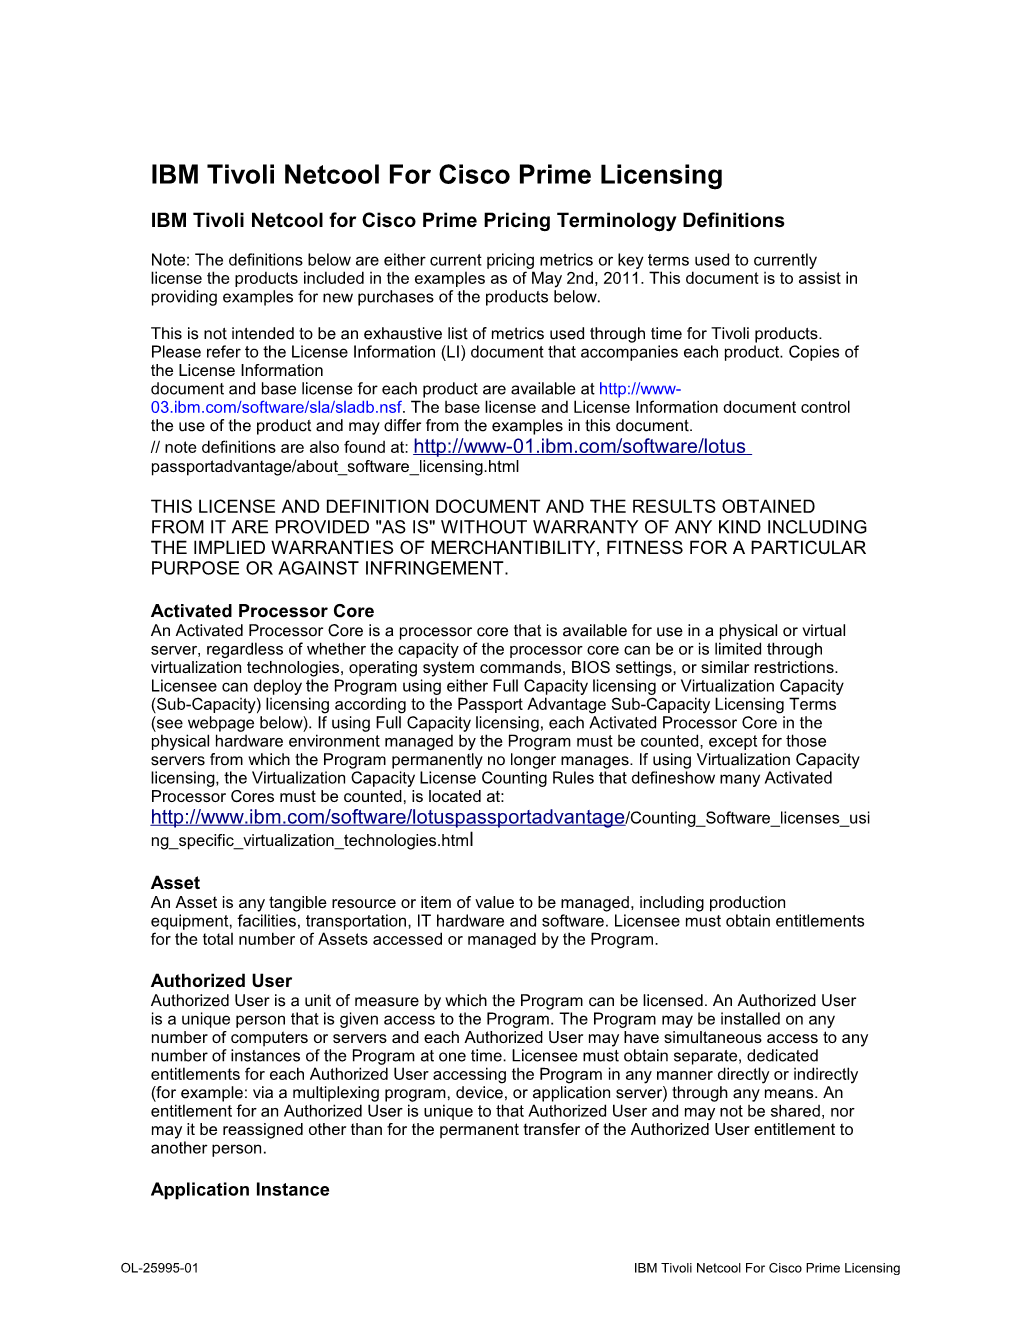 IBM Tivoli Netcool for Cisco Prime Licensing